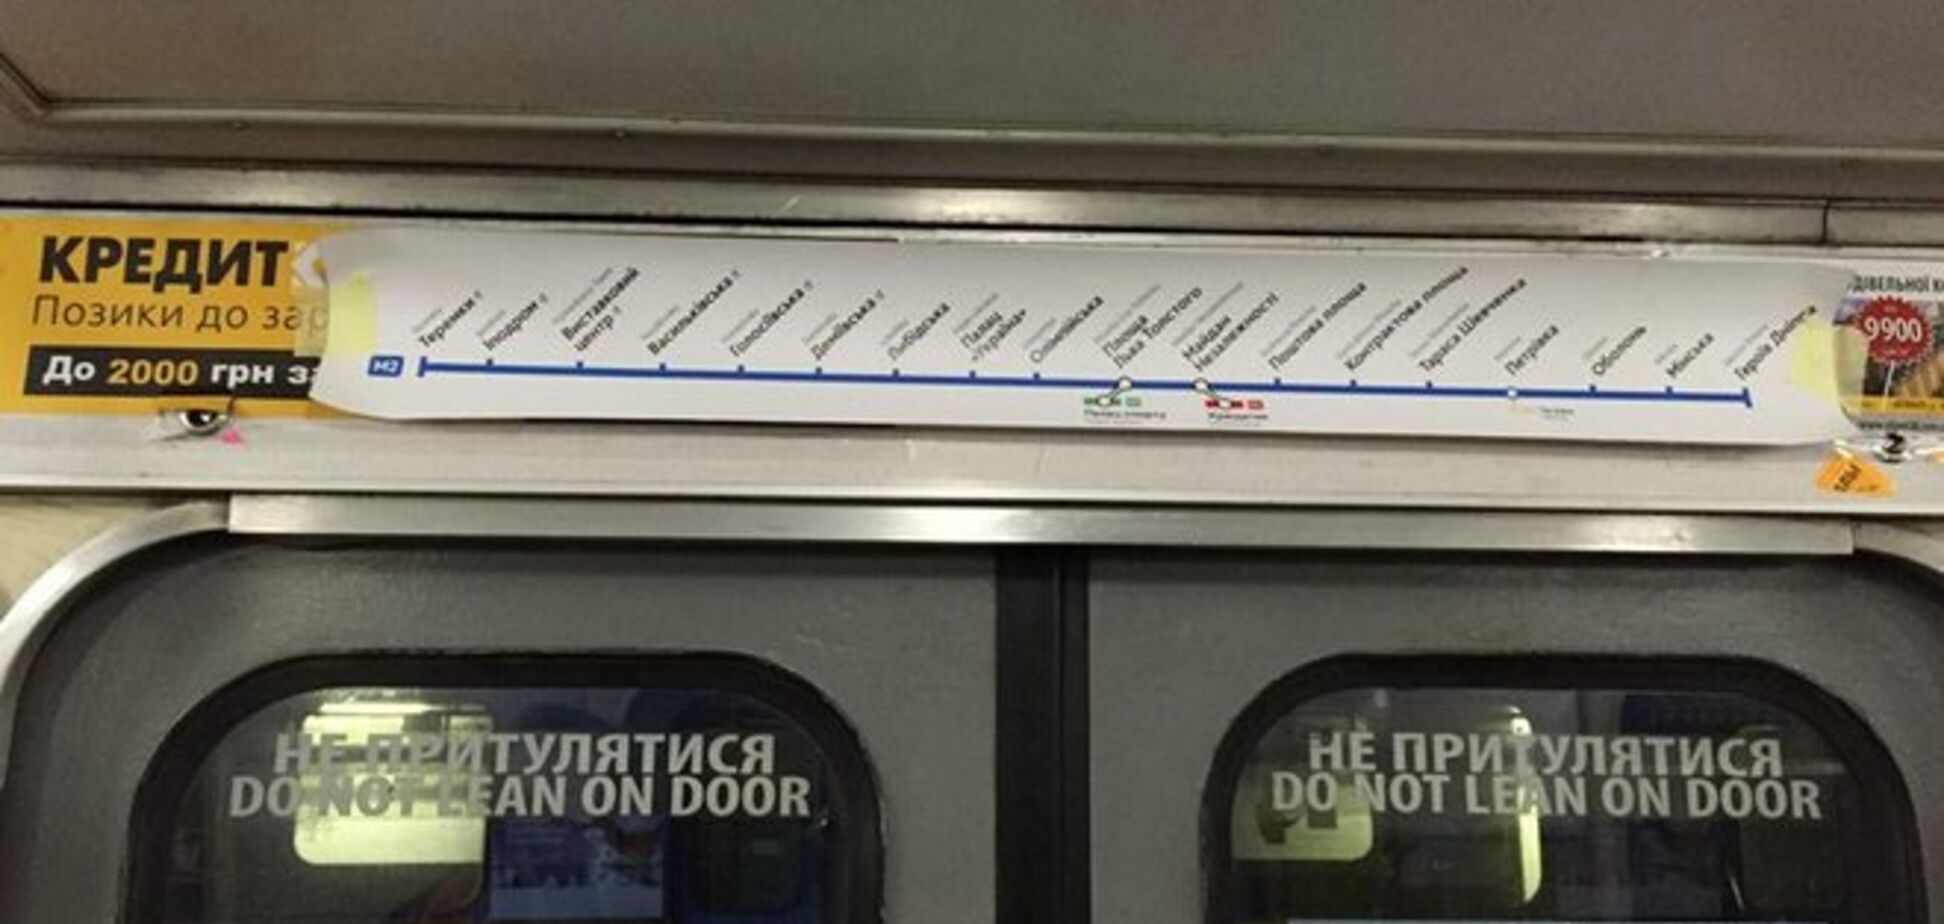 Обнародованы новые схемы линий киевского метро